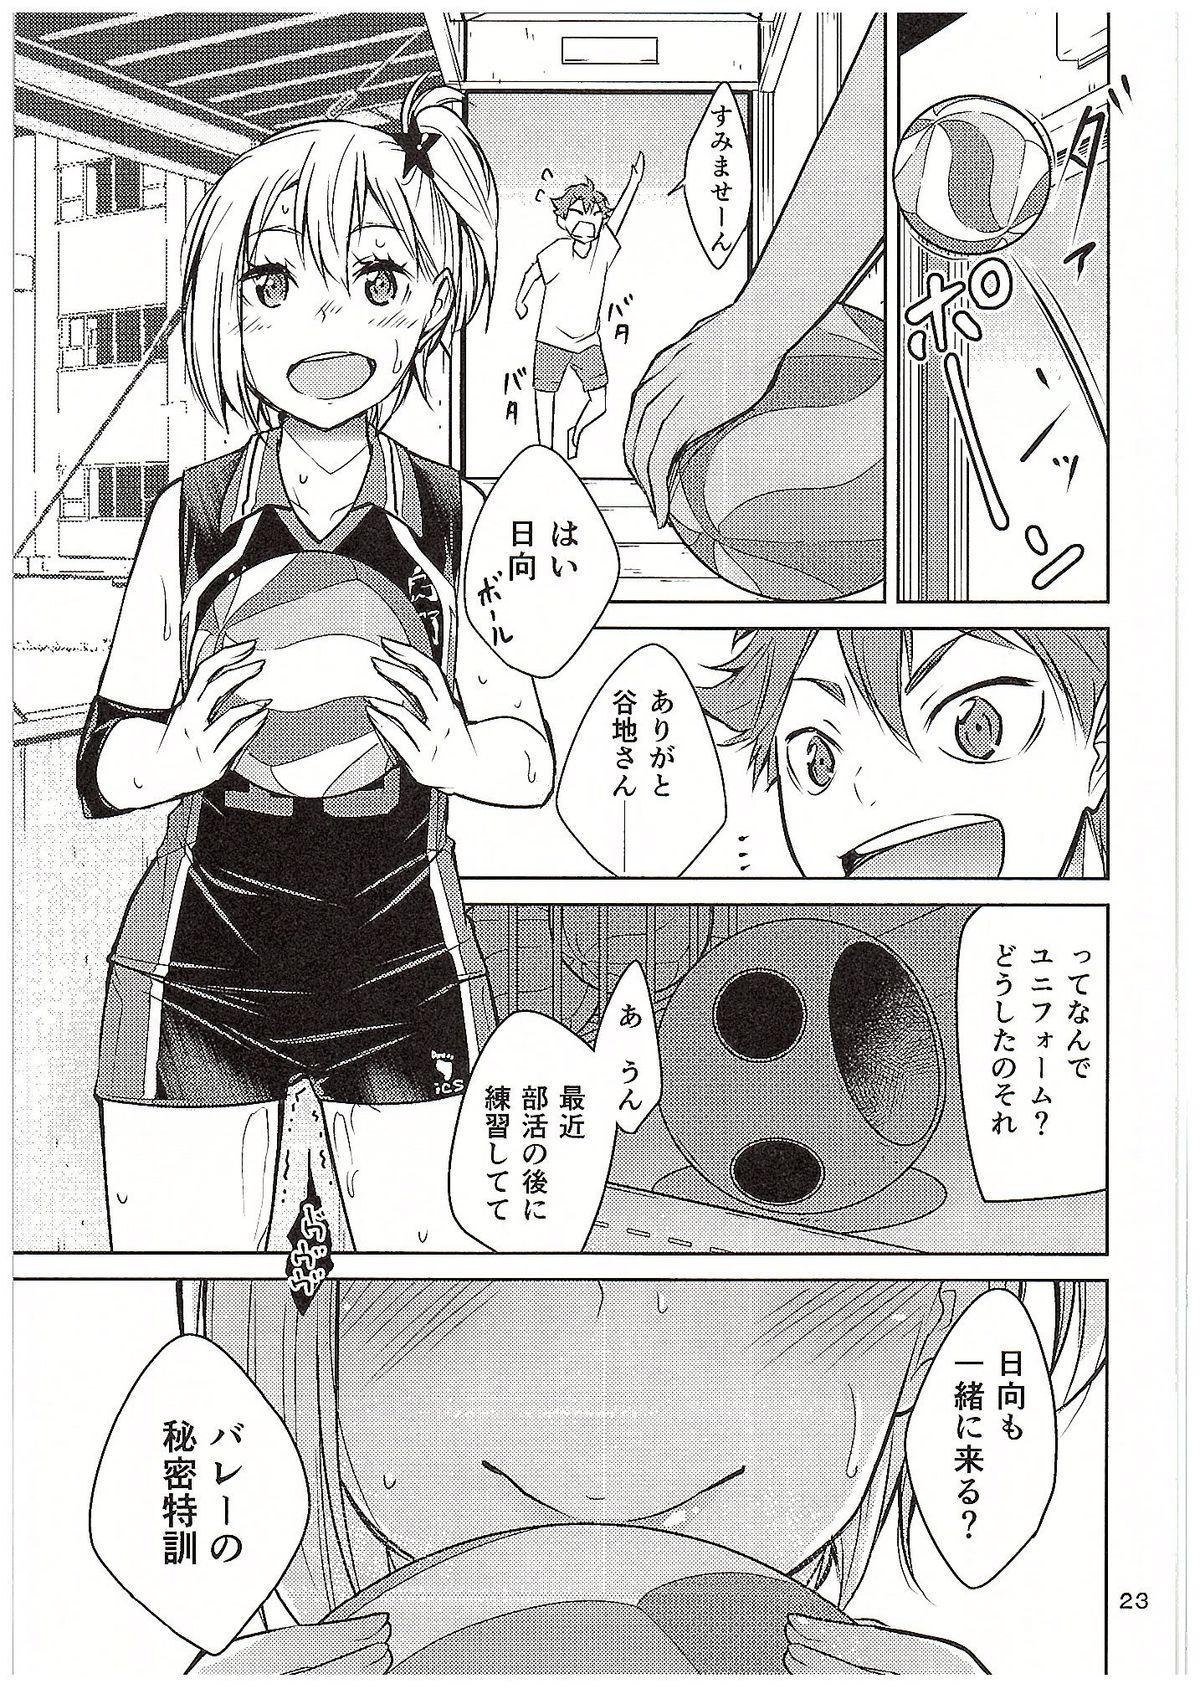 Moeyo! Karasuno Volleyball Shinzenjiai 21